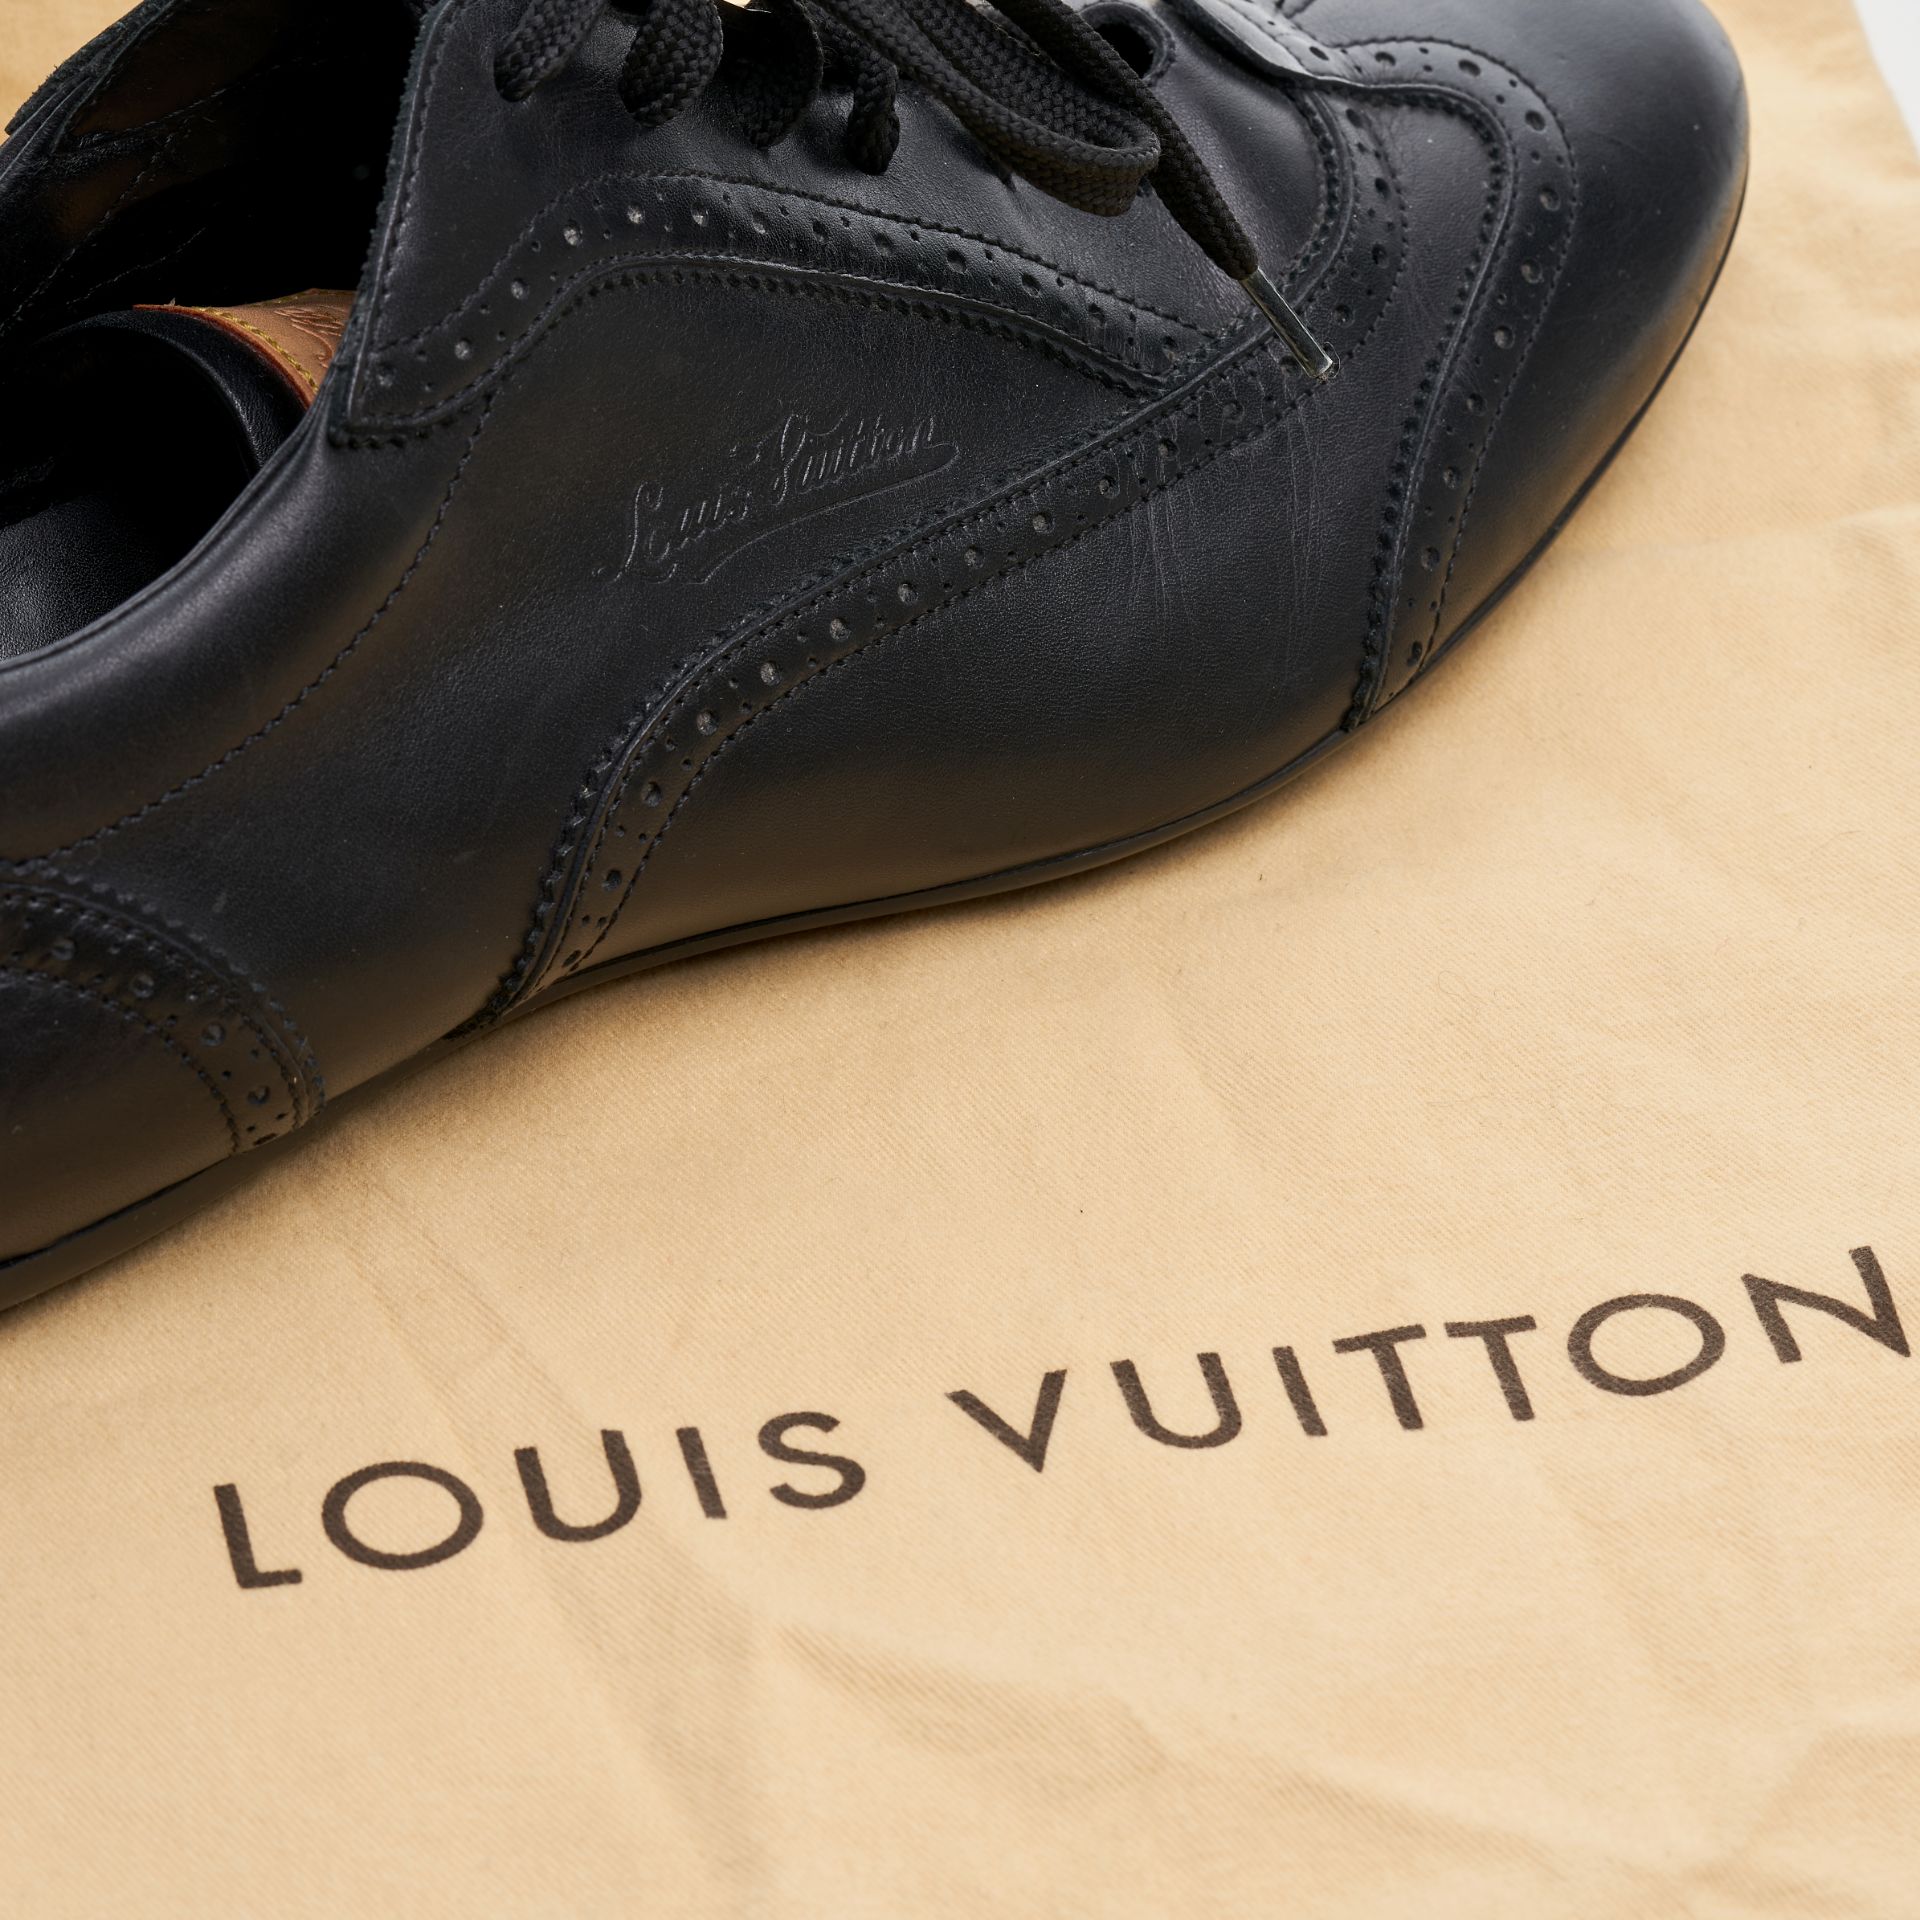 NO RESERVE - LOUIS VUITTON MEN'S LEATHER TRAINERS Condition grade B-. Size 9.5. Black leather t... - Bild 3 aus 3